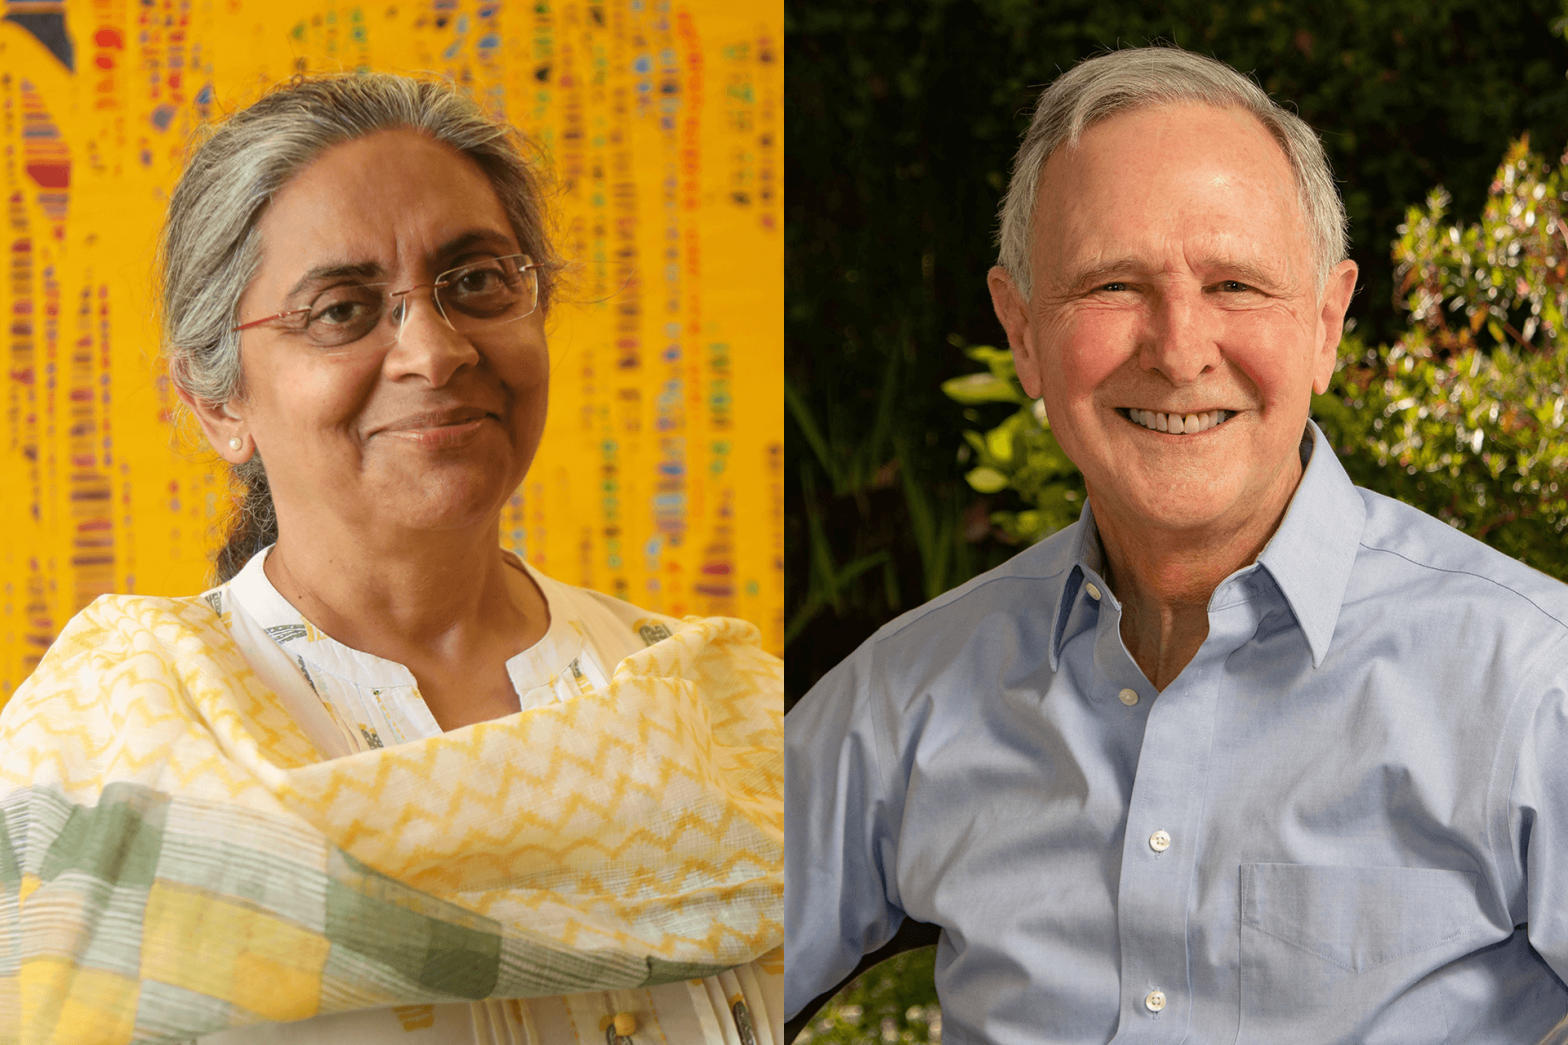 प्रोफेसर एरिक हनुशेक आणि डॉ. रुक्मिणी बॅनर्जी यांनी 2021 चा यदान पुरस्कार 